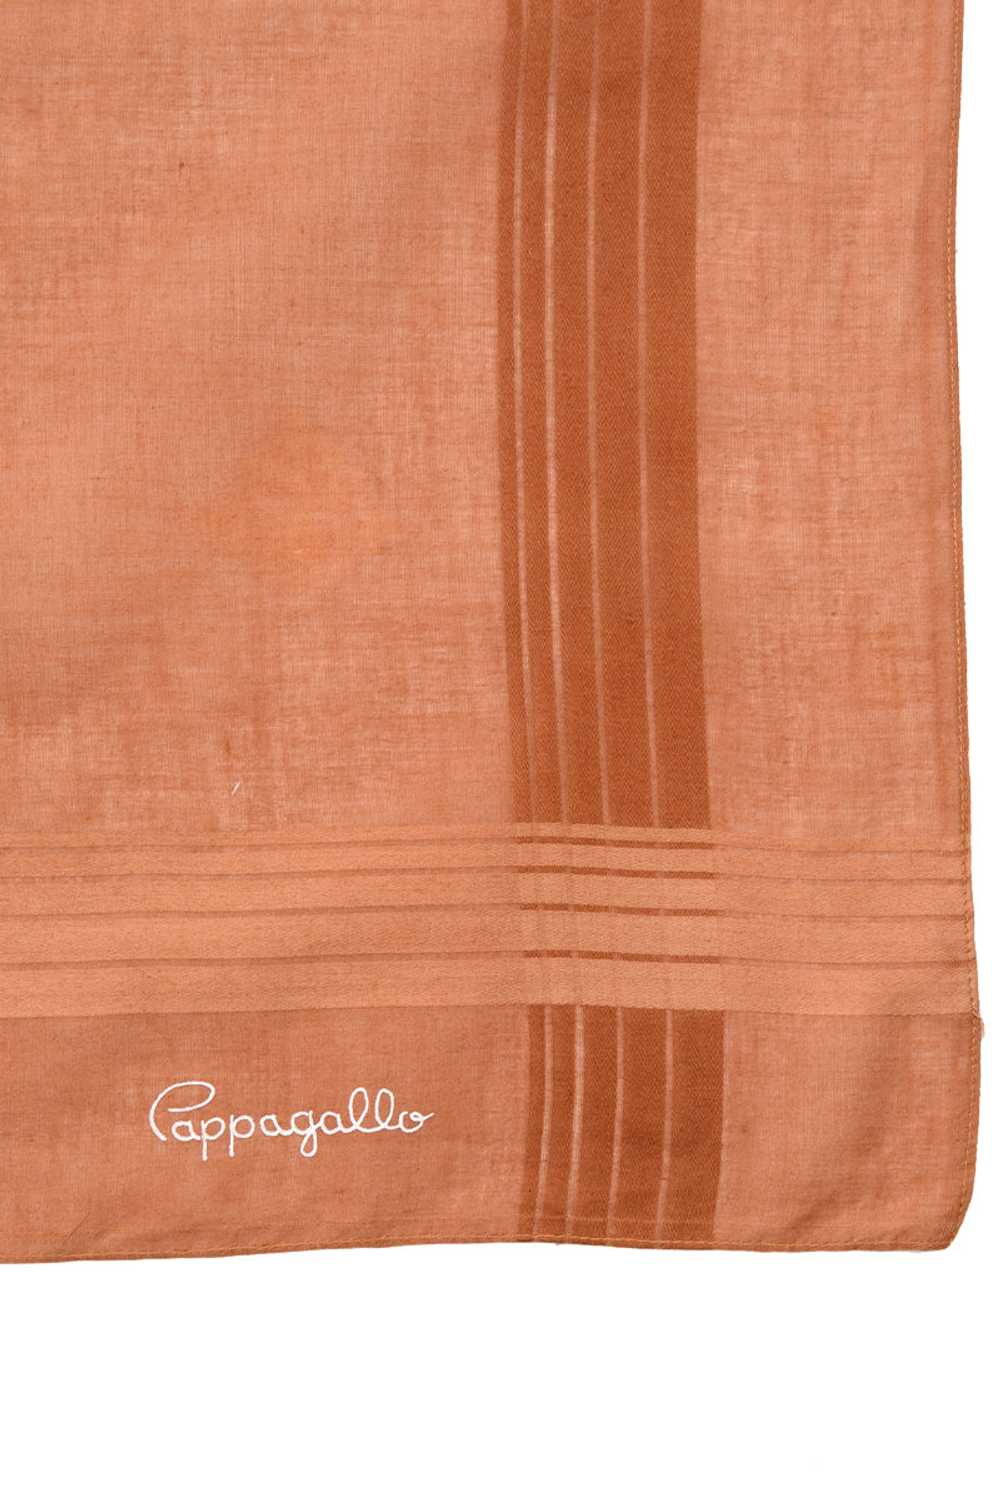 1970s Pappagallo Copper Brown Square Cotton Scarf - image 4